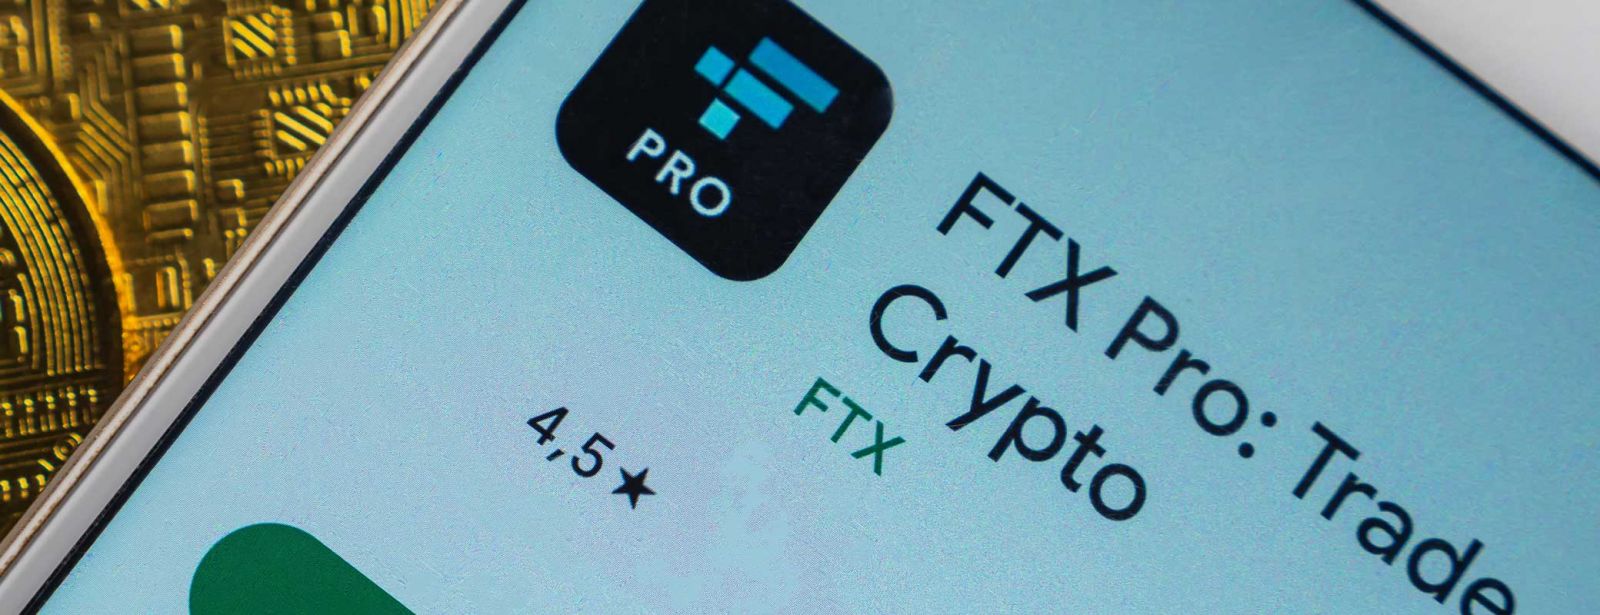 FTX-Pleite: Welche Folgen hat die Insolvenz der Krypto-Börse?